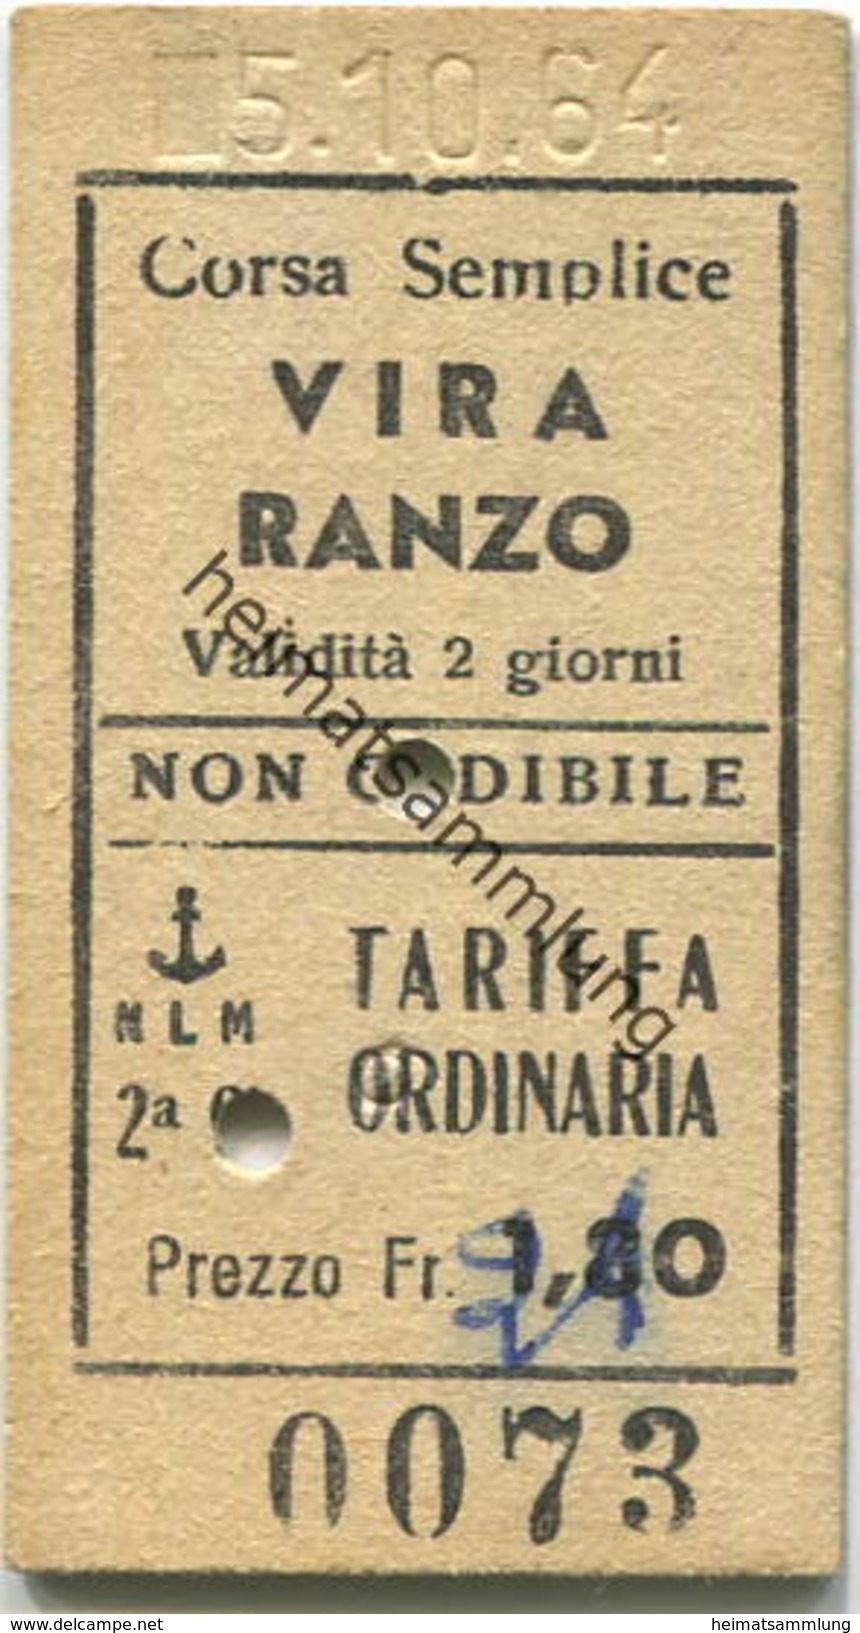 Schweiz - NLM Vira Ranzo - Fahrkarte 1964 - Europa